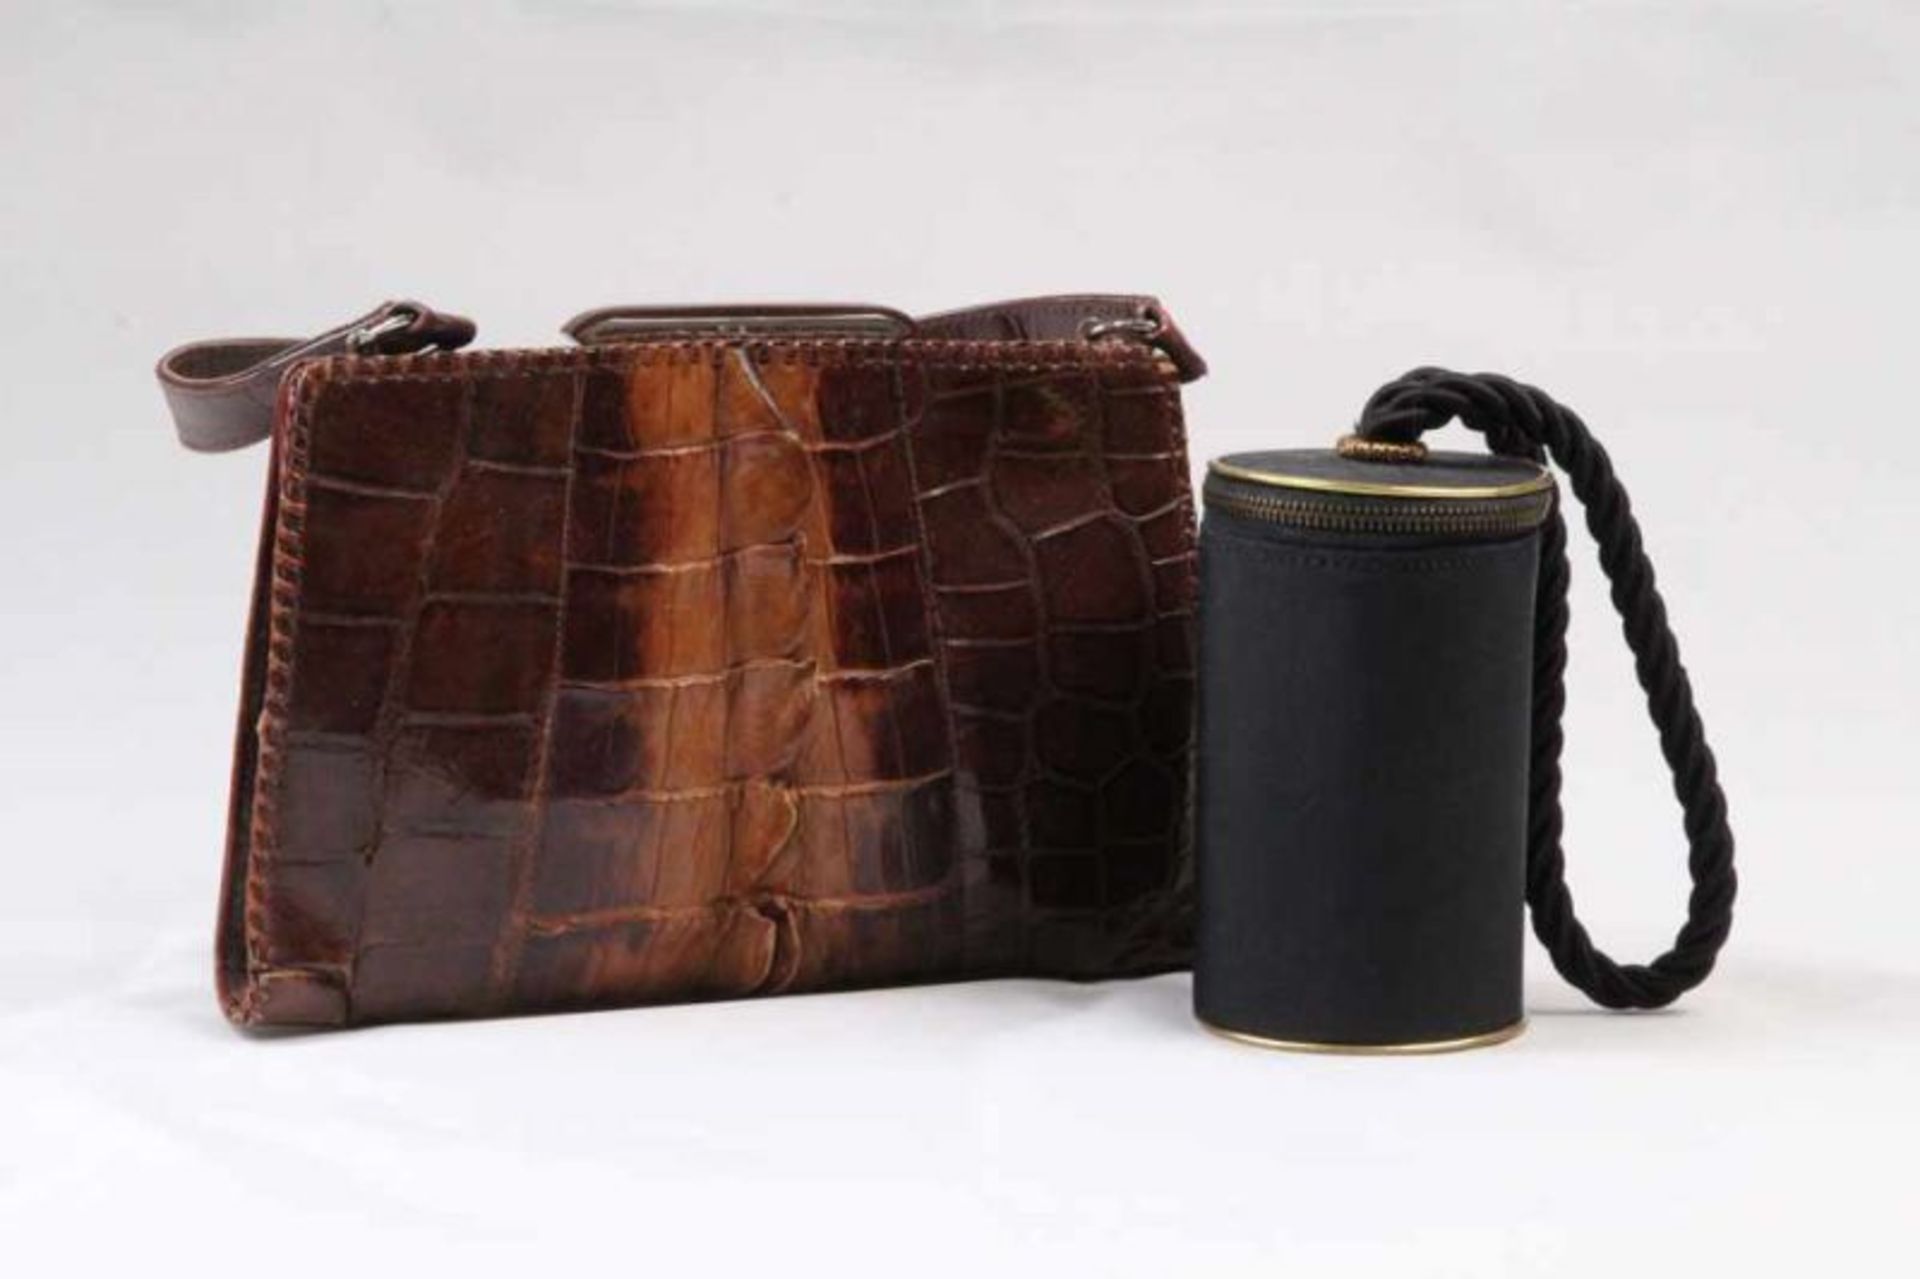 Zwei Handtaschen.Braunes Leder mit Krokoprägung, dazu ein Adendtäschchen aus schwarzem Stoff.